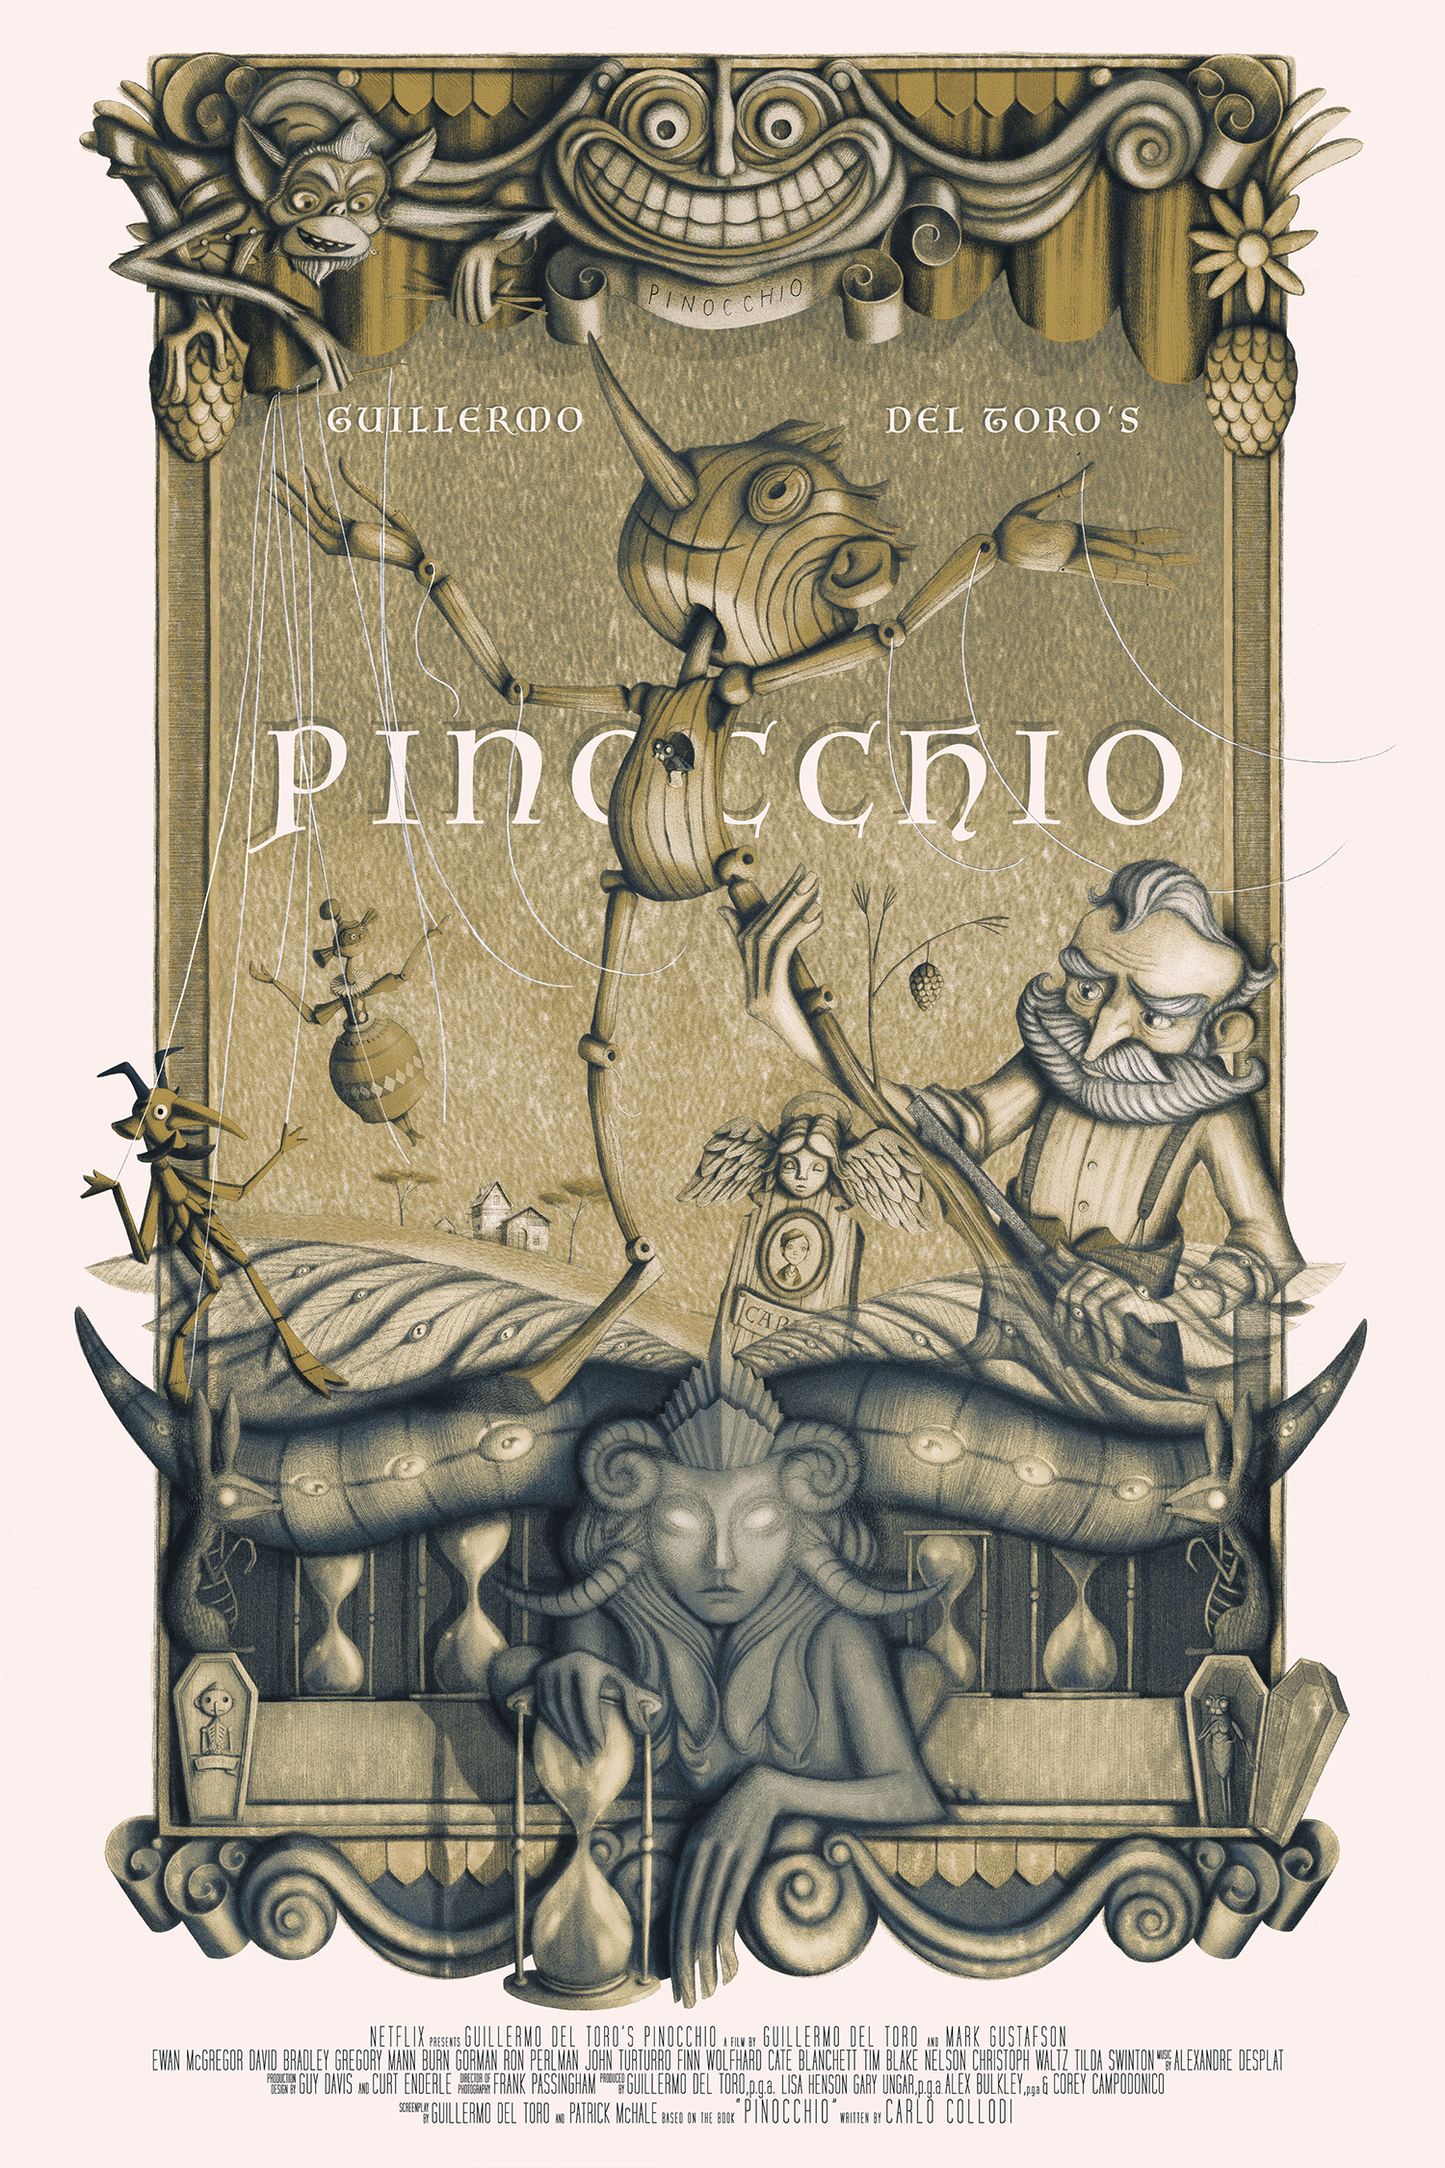 Giulia Del Mastio "Pinocchio" Variant - Charity Release